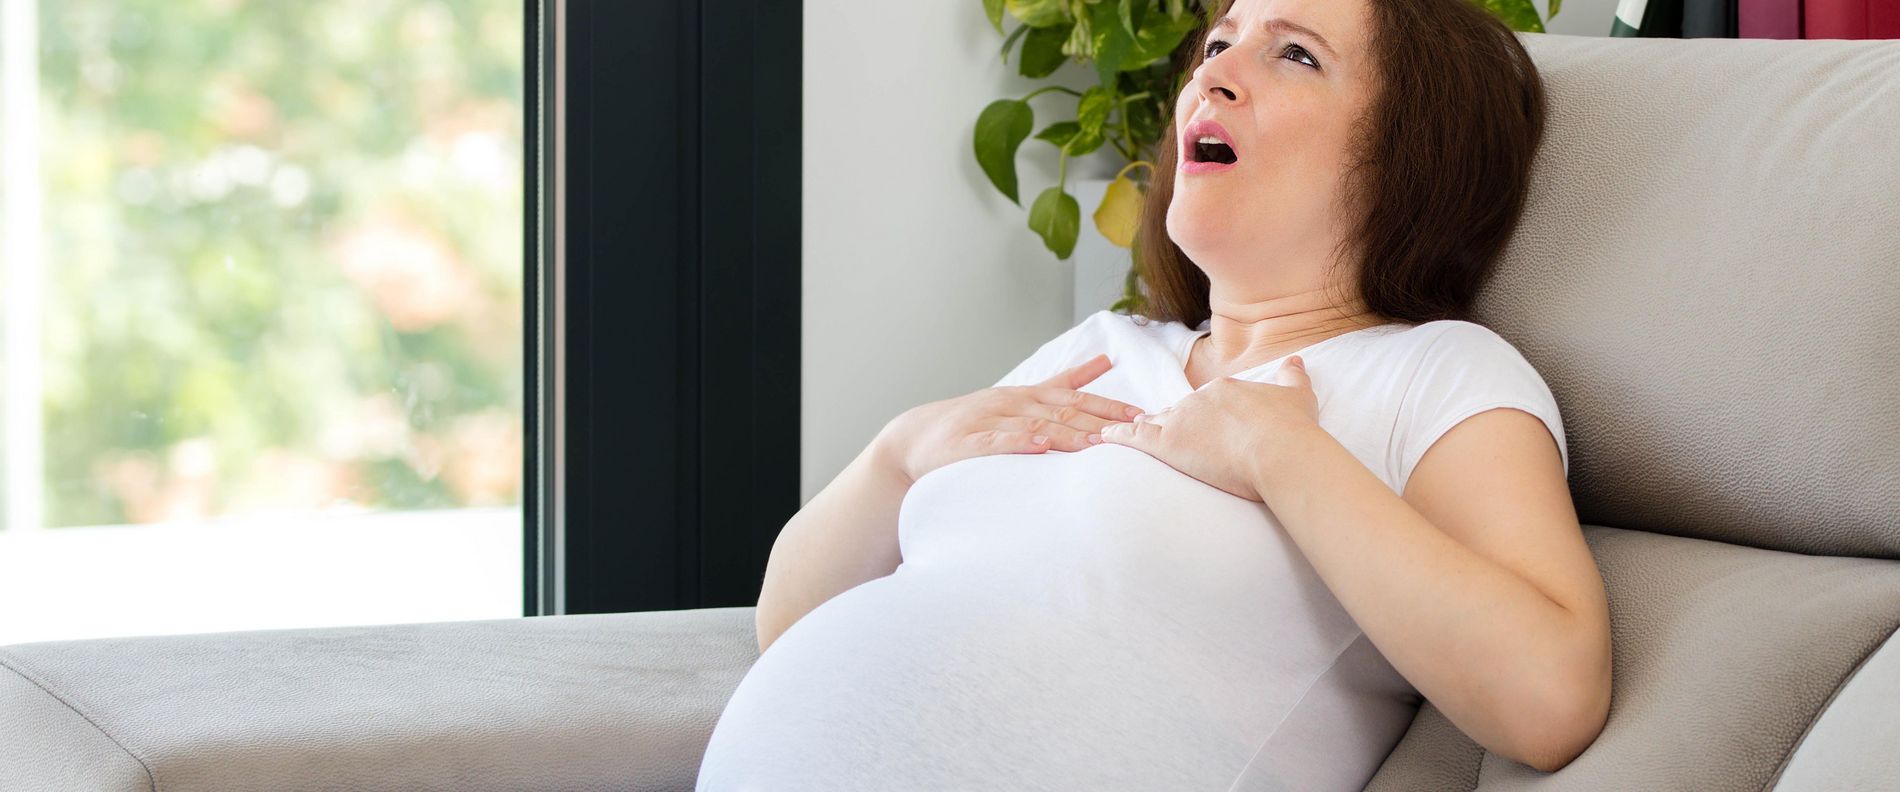 Eine schwangere Frau sitzt auf dem Sofa und hat Atemnot